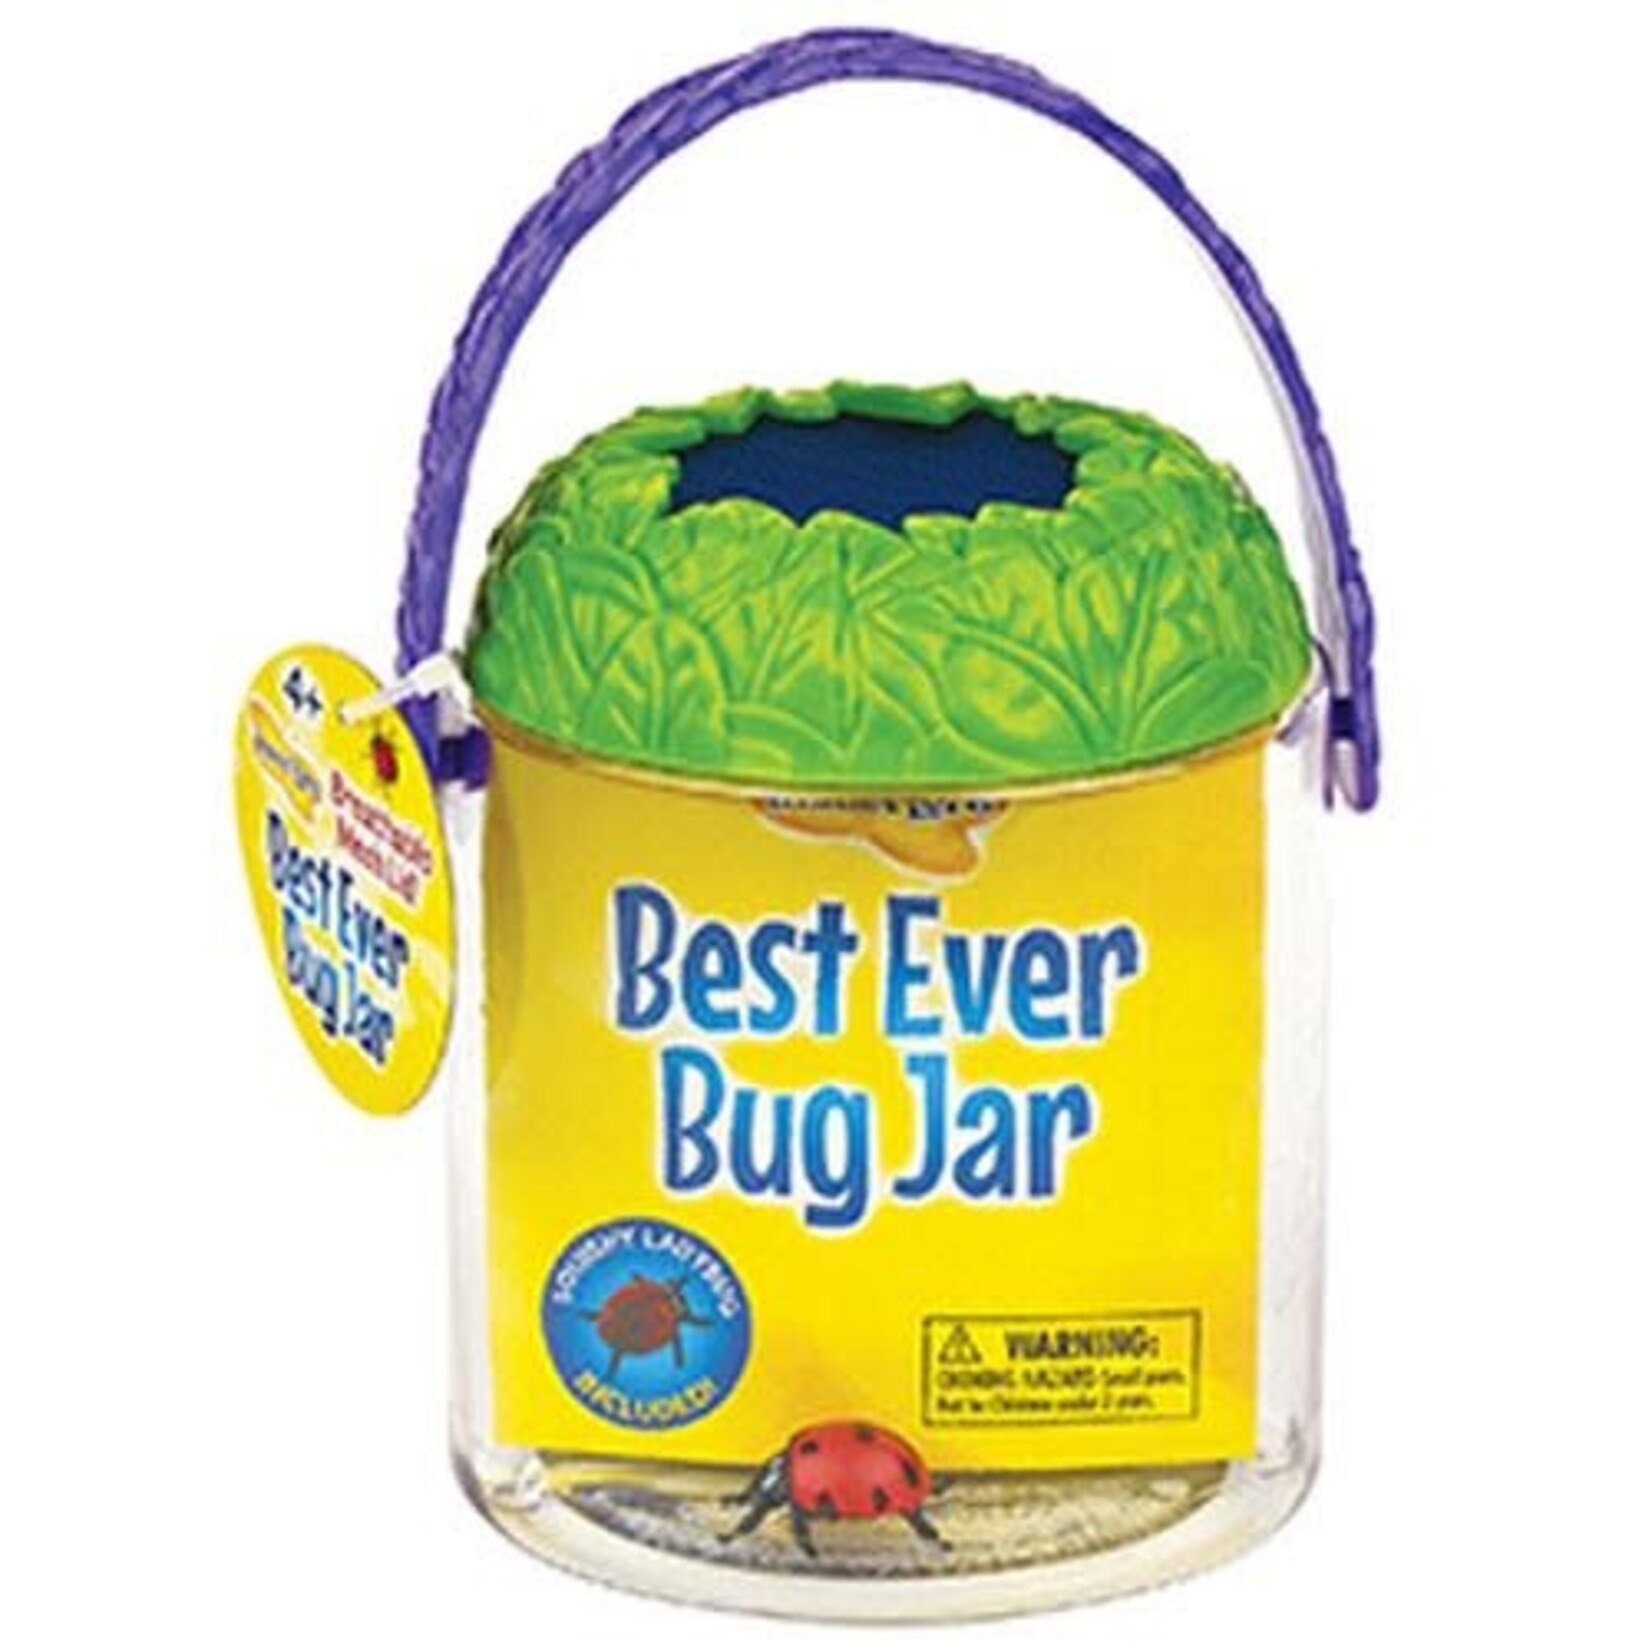 Best Ever Bug Jar(